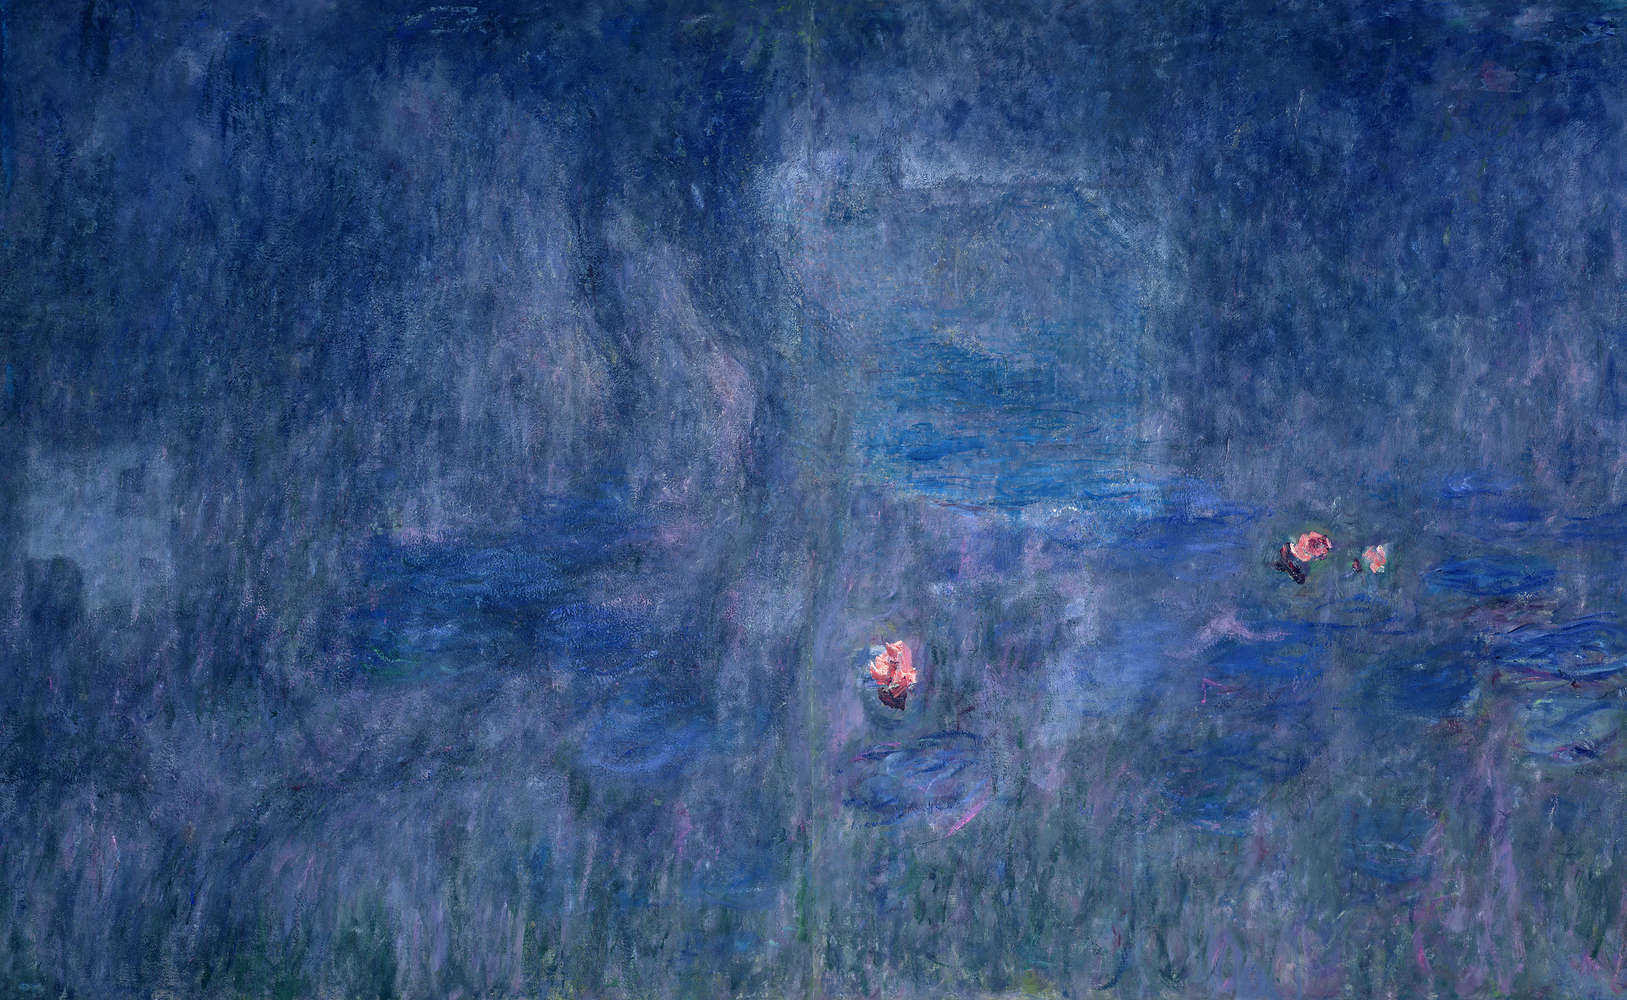             Fototapete "Seerosen: Reflexion der Bäume" von Claude Monet
        